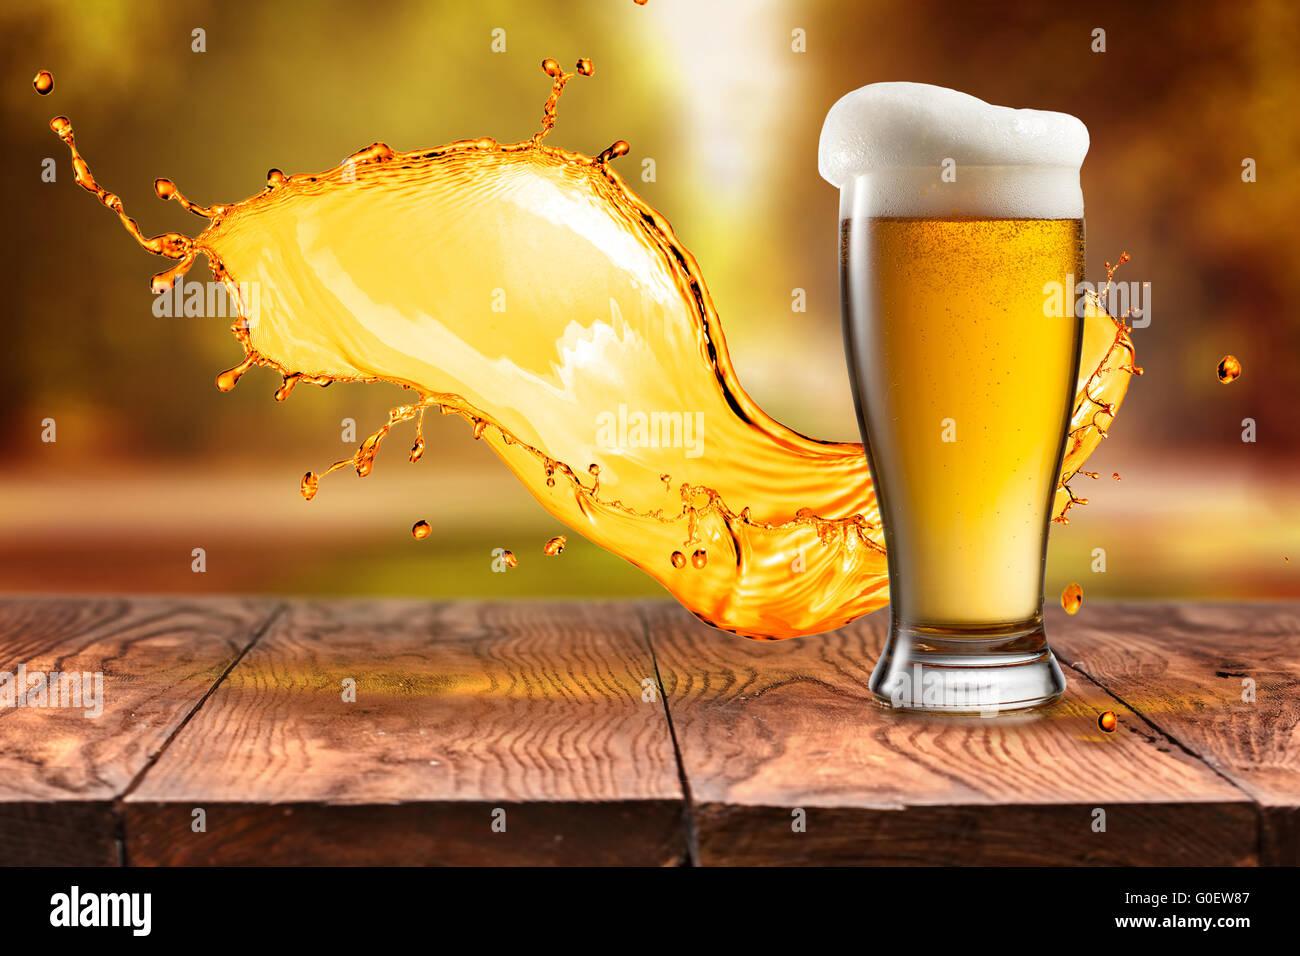 La bière en verre avec des vagues sur la table en bois contre les feuilles d'automne Banque D'Images